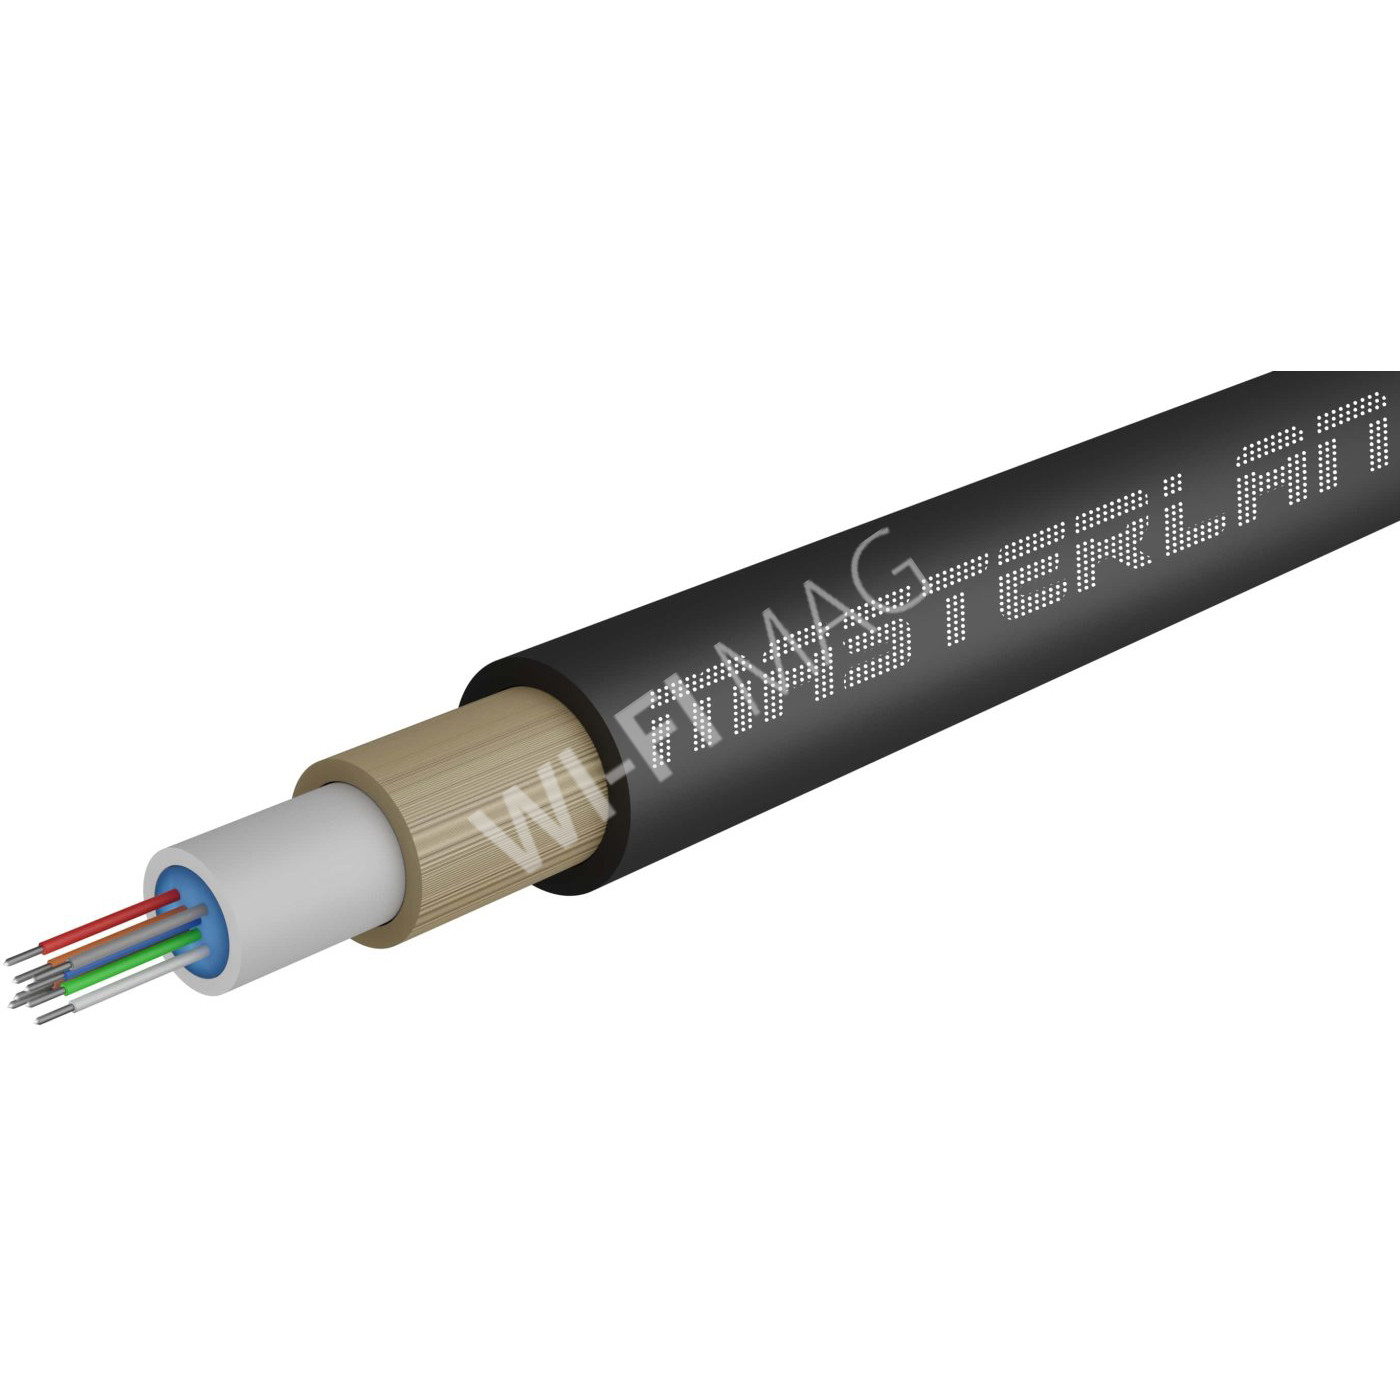 Masterlan Air1 fiber optic cable - 2vl 9/125, air-blowen, SM, HDPE, G657A1, 2000m, одномодовый оптический кабель, чёрный